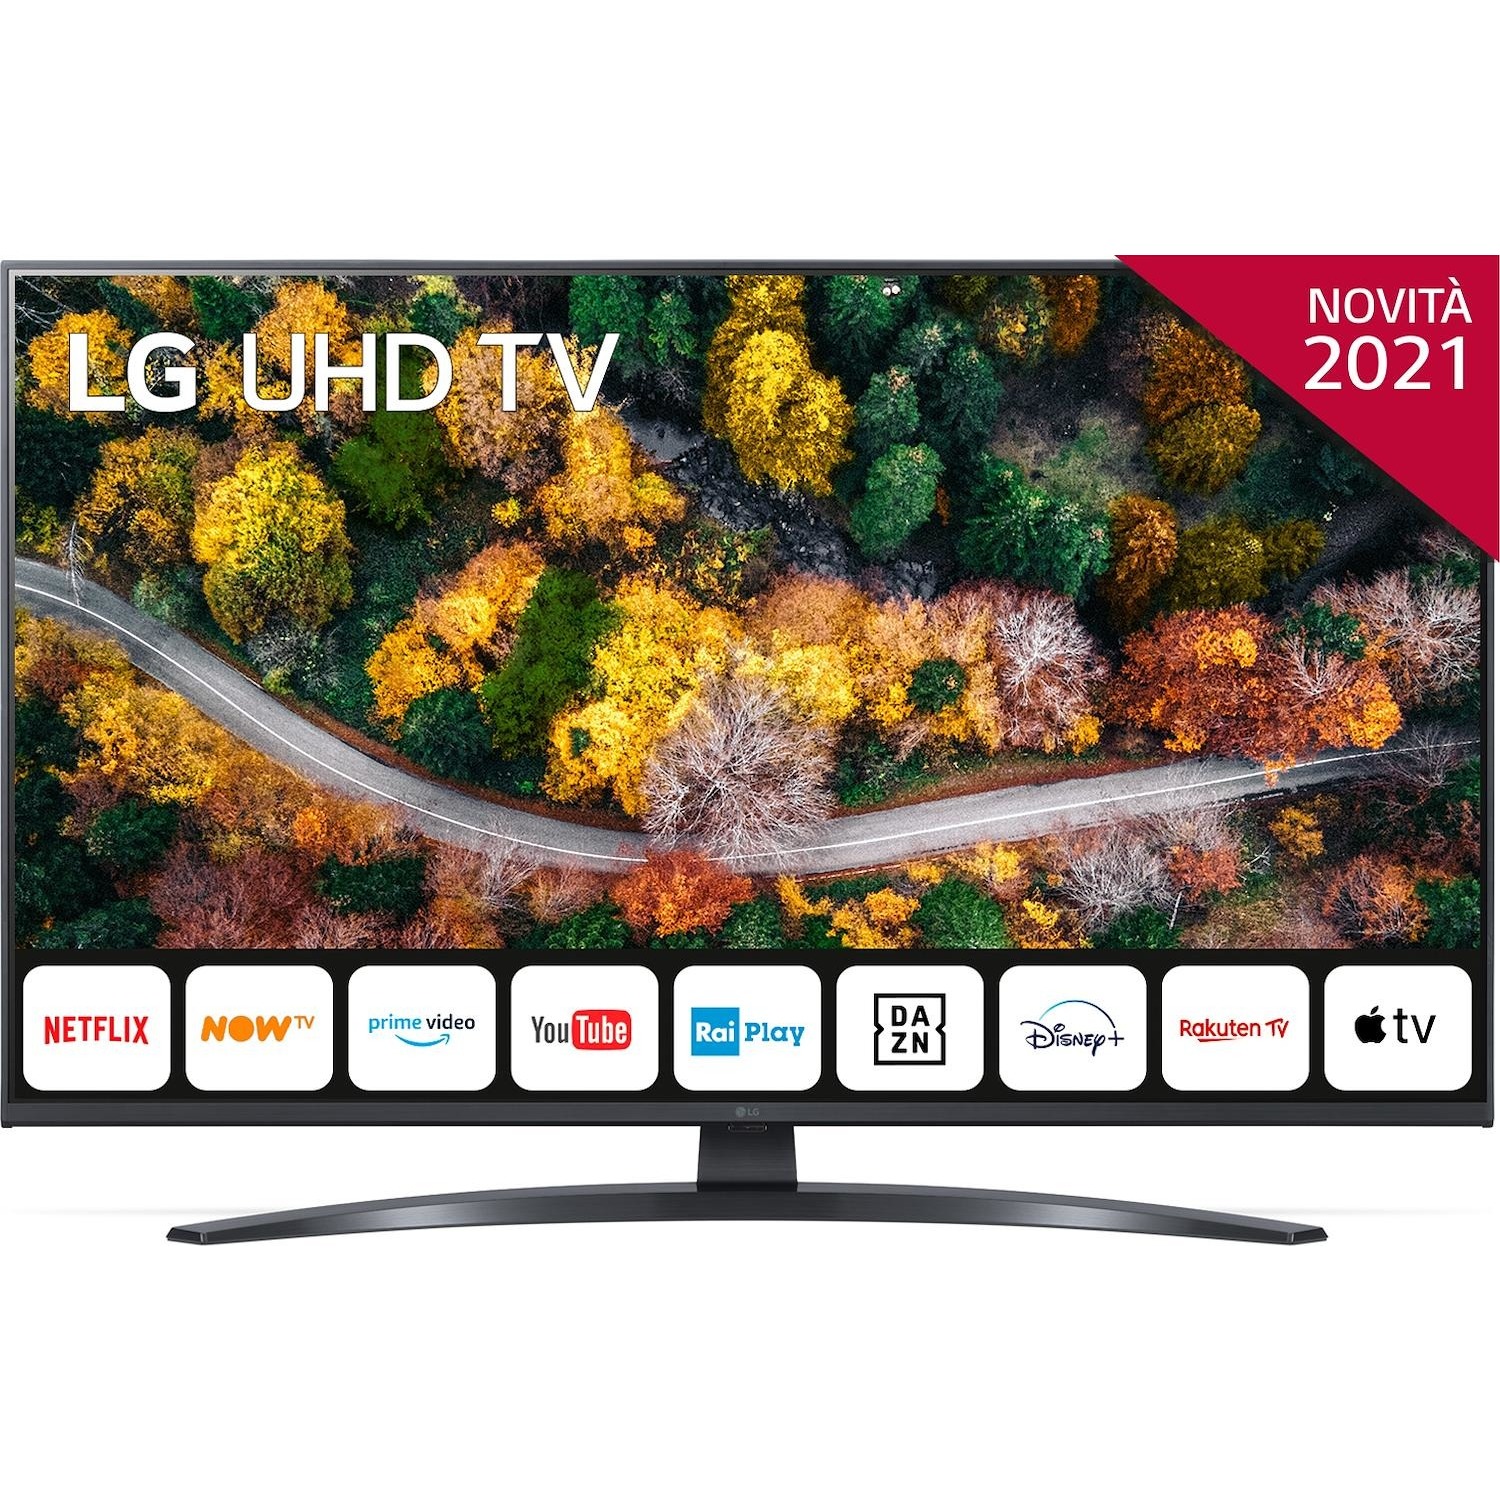 Immagine per TV LED LG 43UP78006 Calibrato 4K e FULL HD da DIMOStore